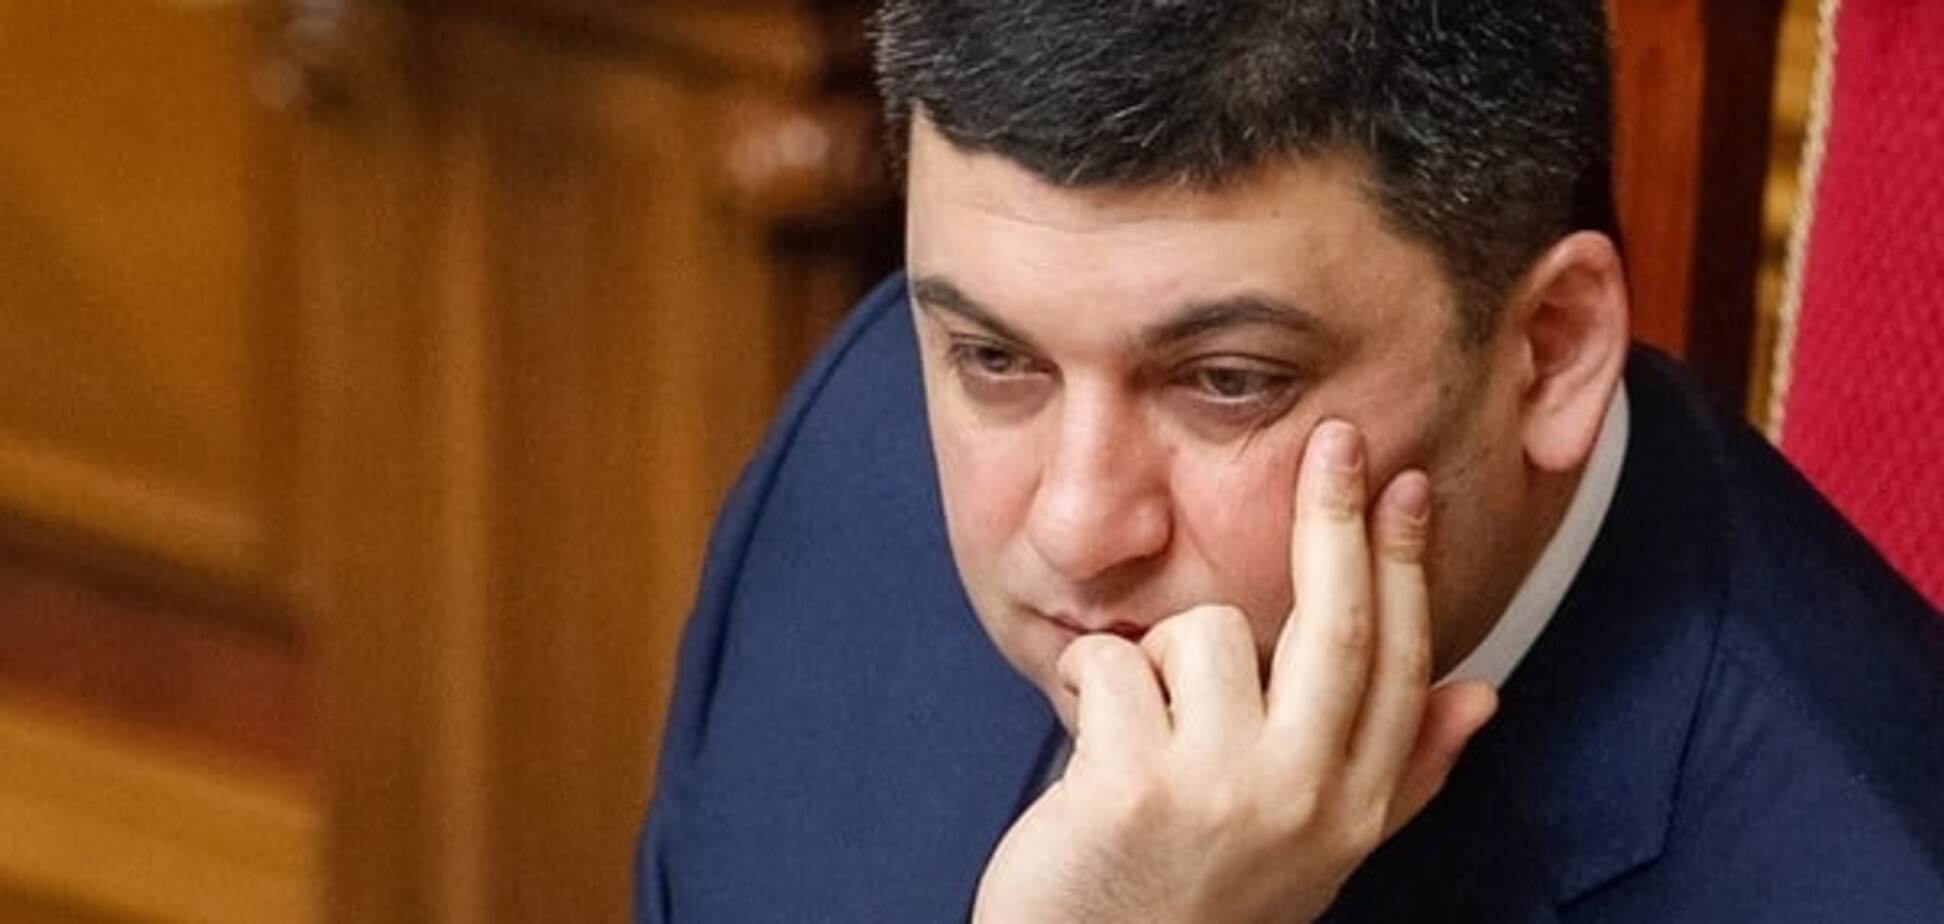 Гройсман-премьер нарушит баланс сил в парламентско-президентской республике - Портников